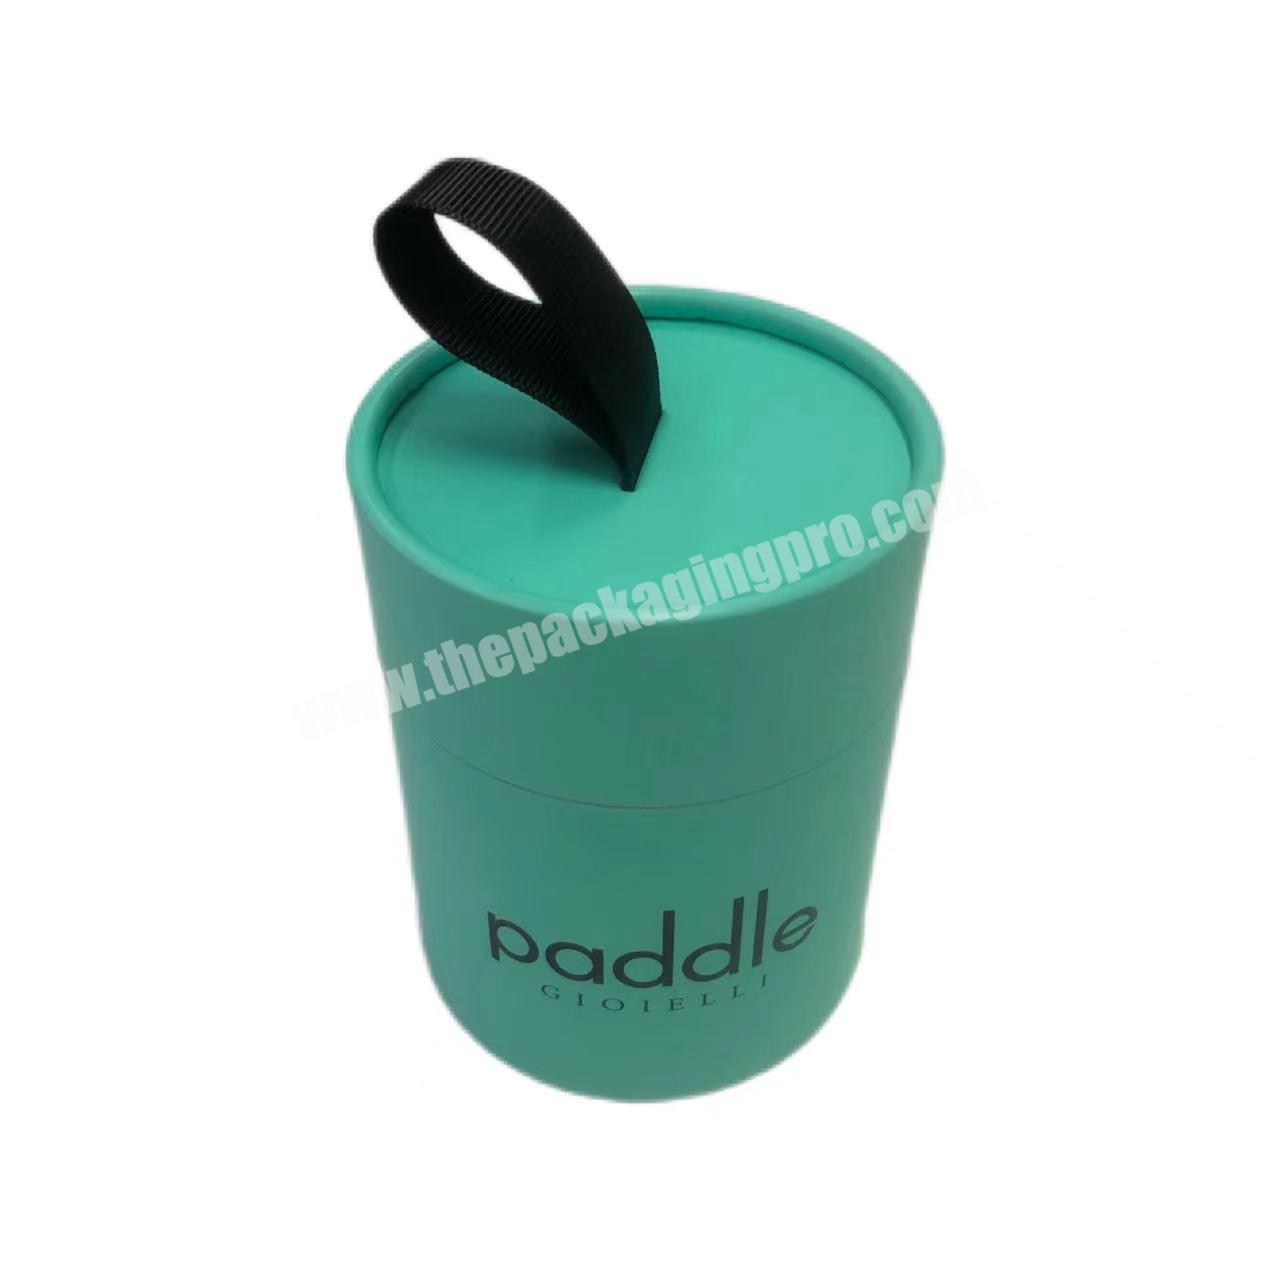 Round Paper Tube Packaging Custom Printed Creative Green Paper Tube Packaging For Tennis Packaging